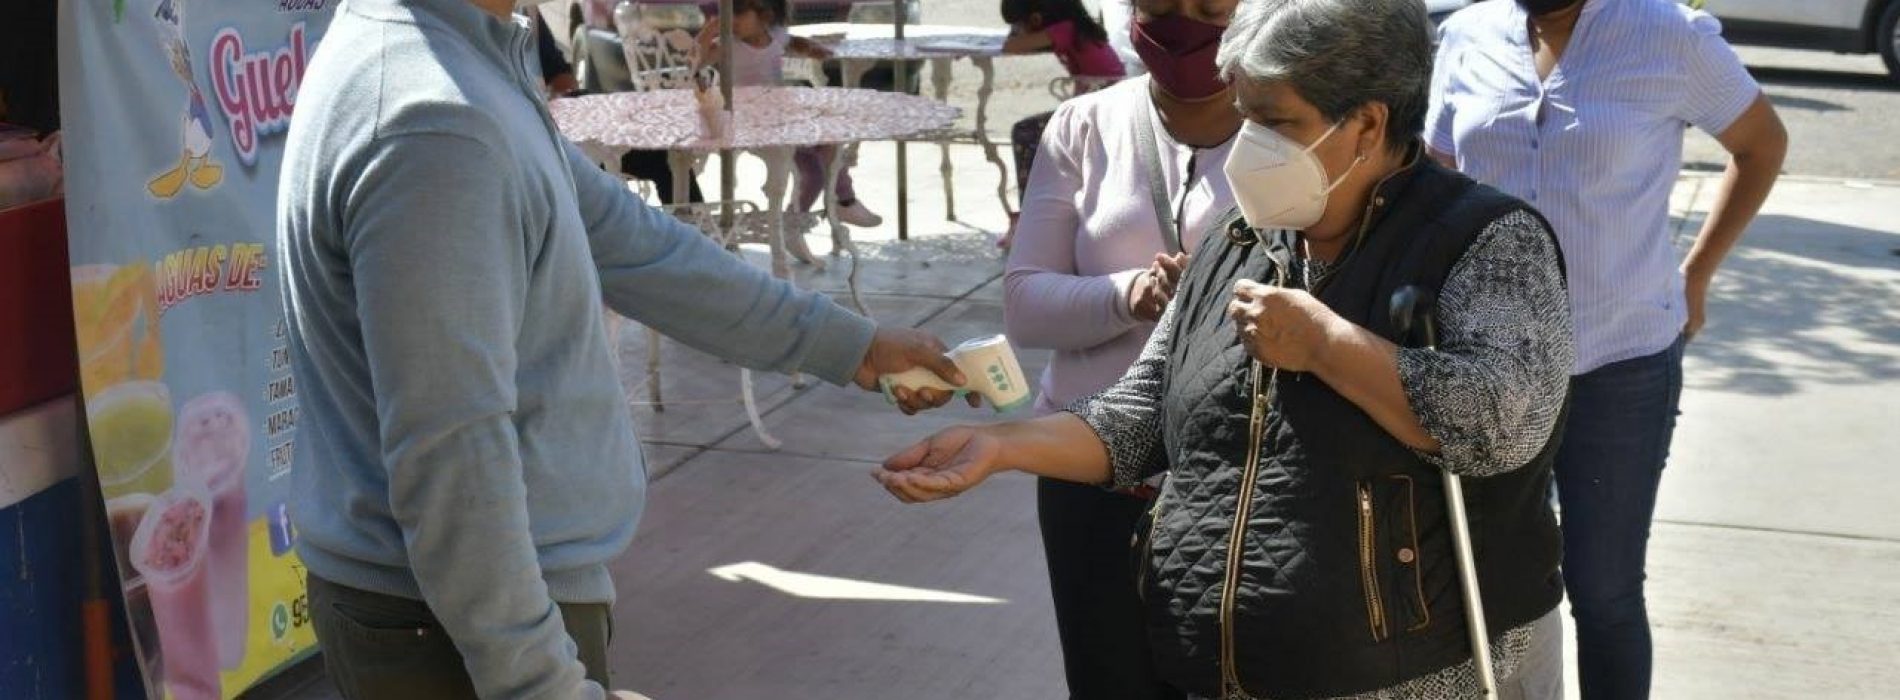 Refuerza el Ayuntamiento filtros sanitarios en mercados públicos de Oaxaca de Juárez